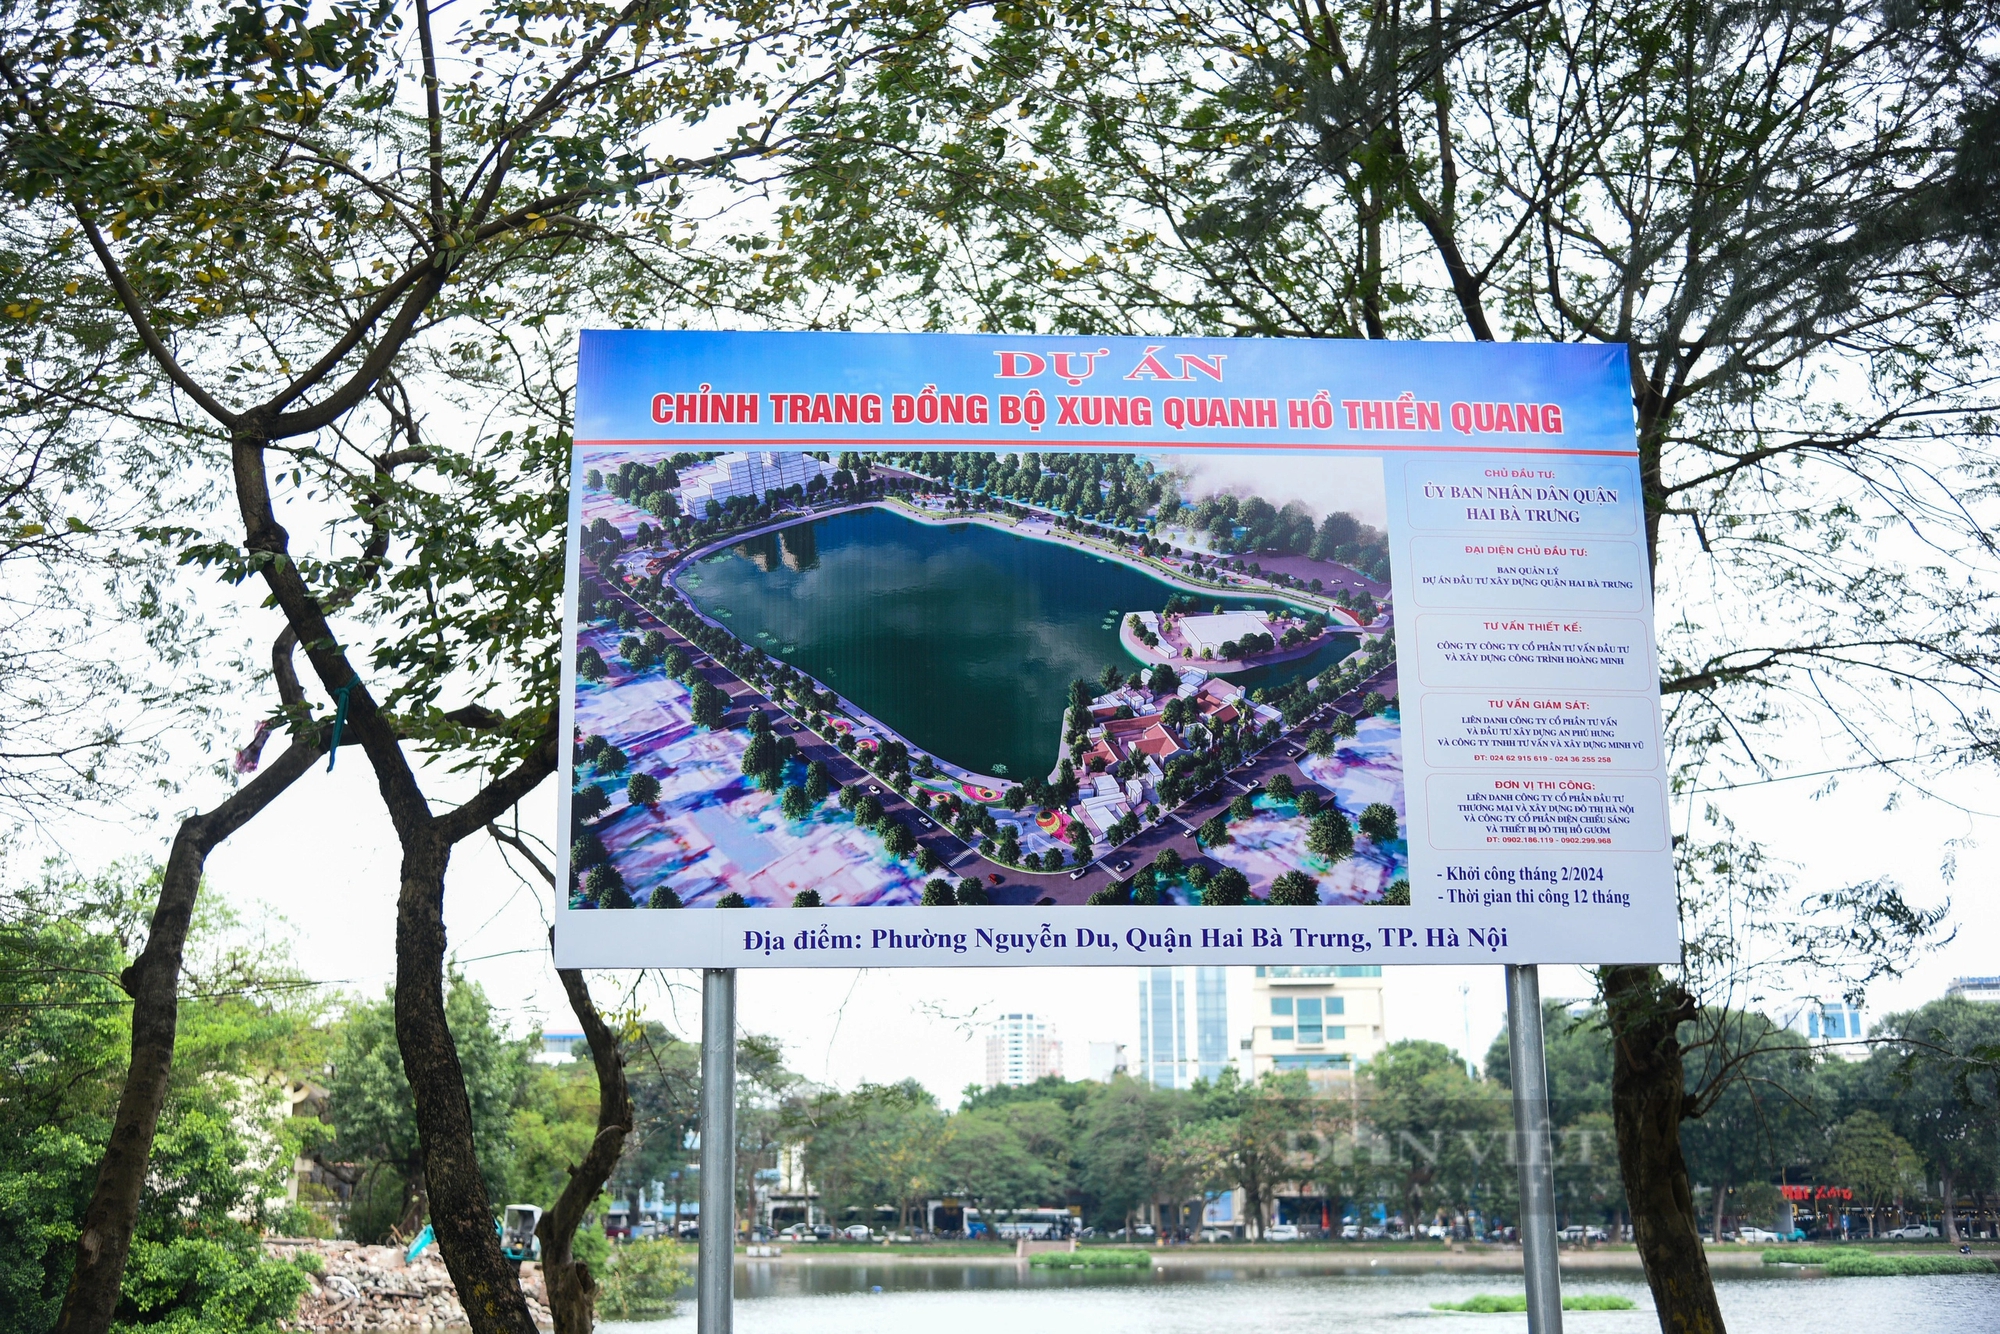 Hiện trạng khu vực hồ rộng gần 5 hec-ta được đề xuất xây 5 quảng trường ở Hà Nội- Ảnh 2.